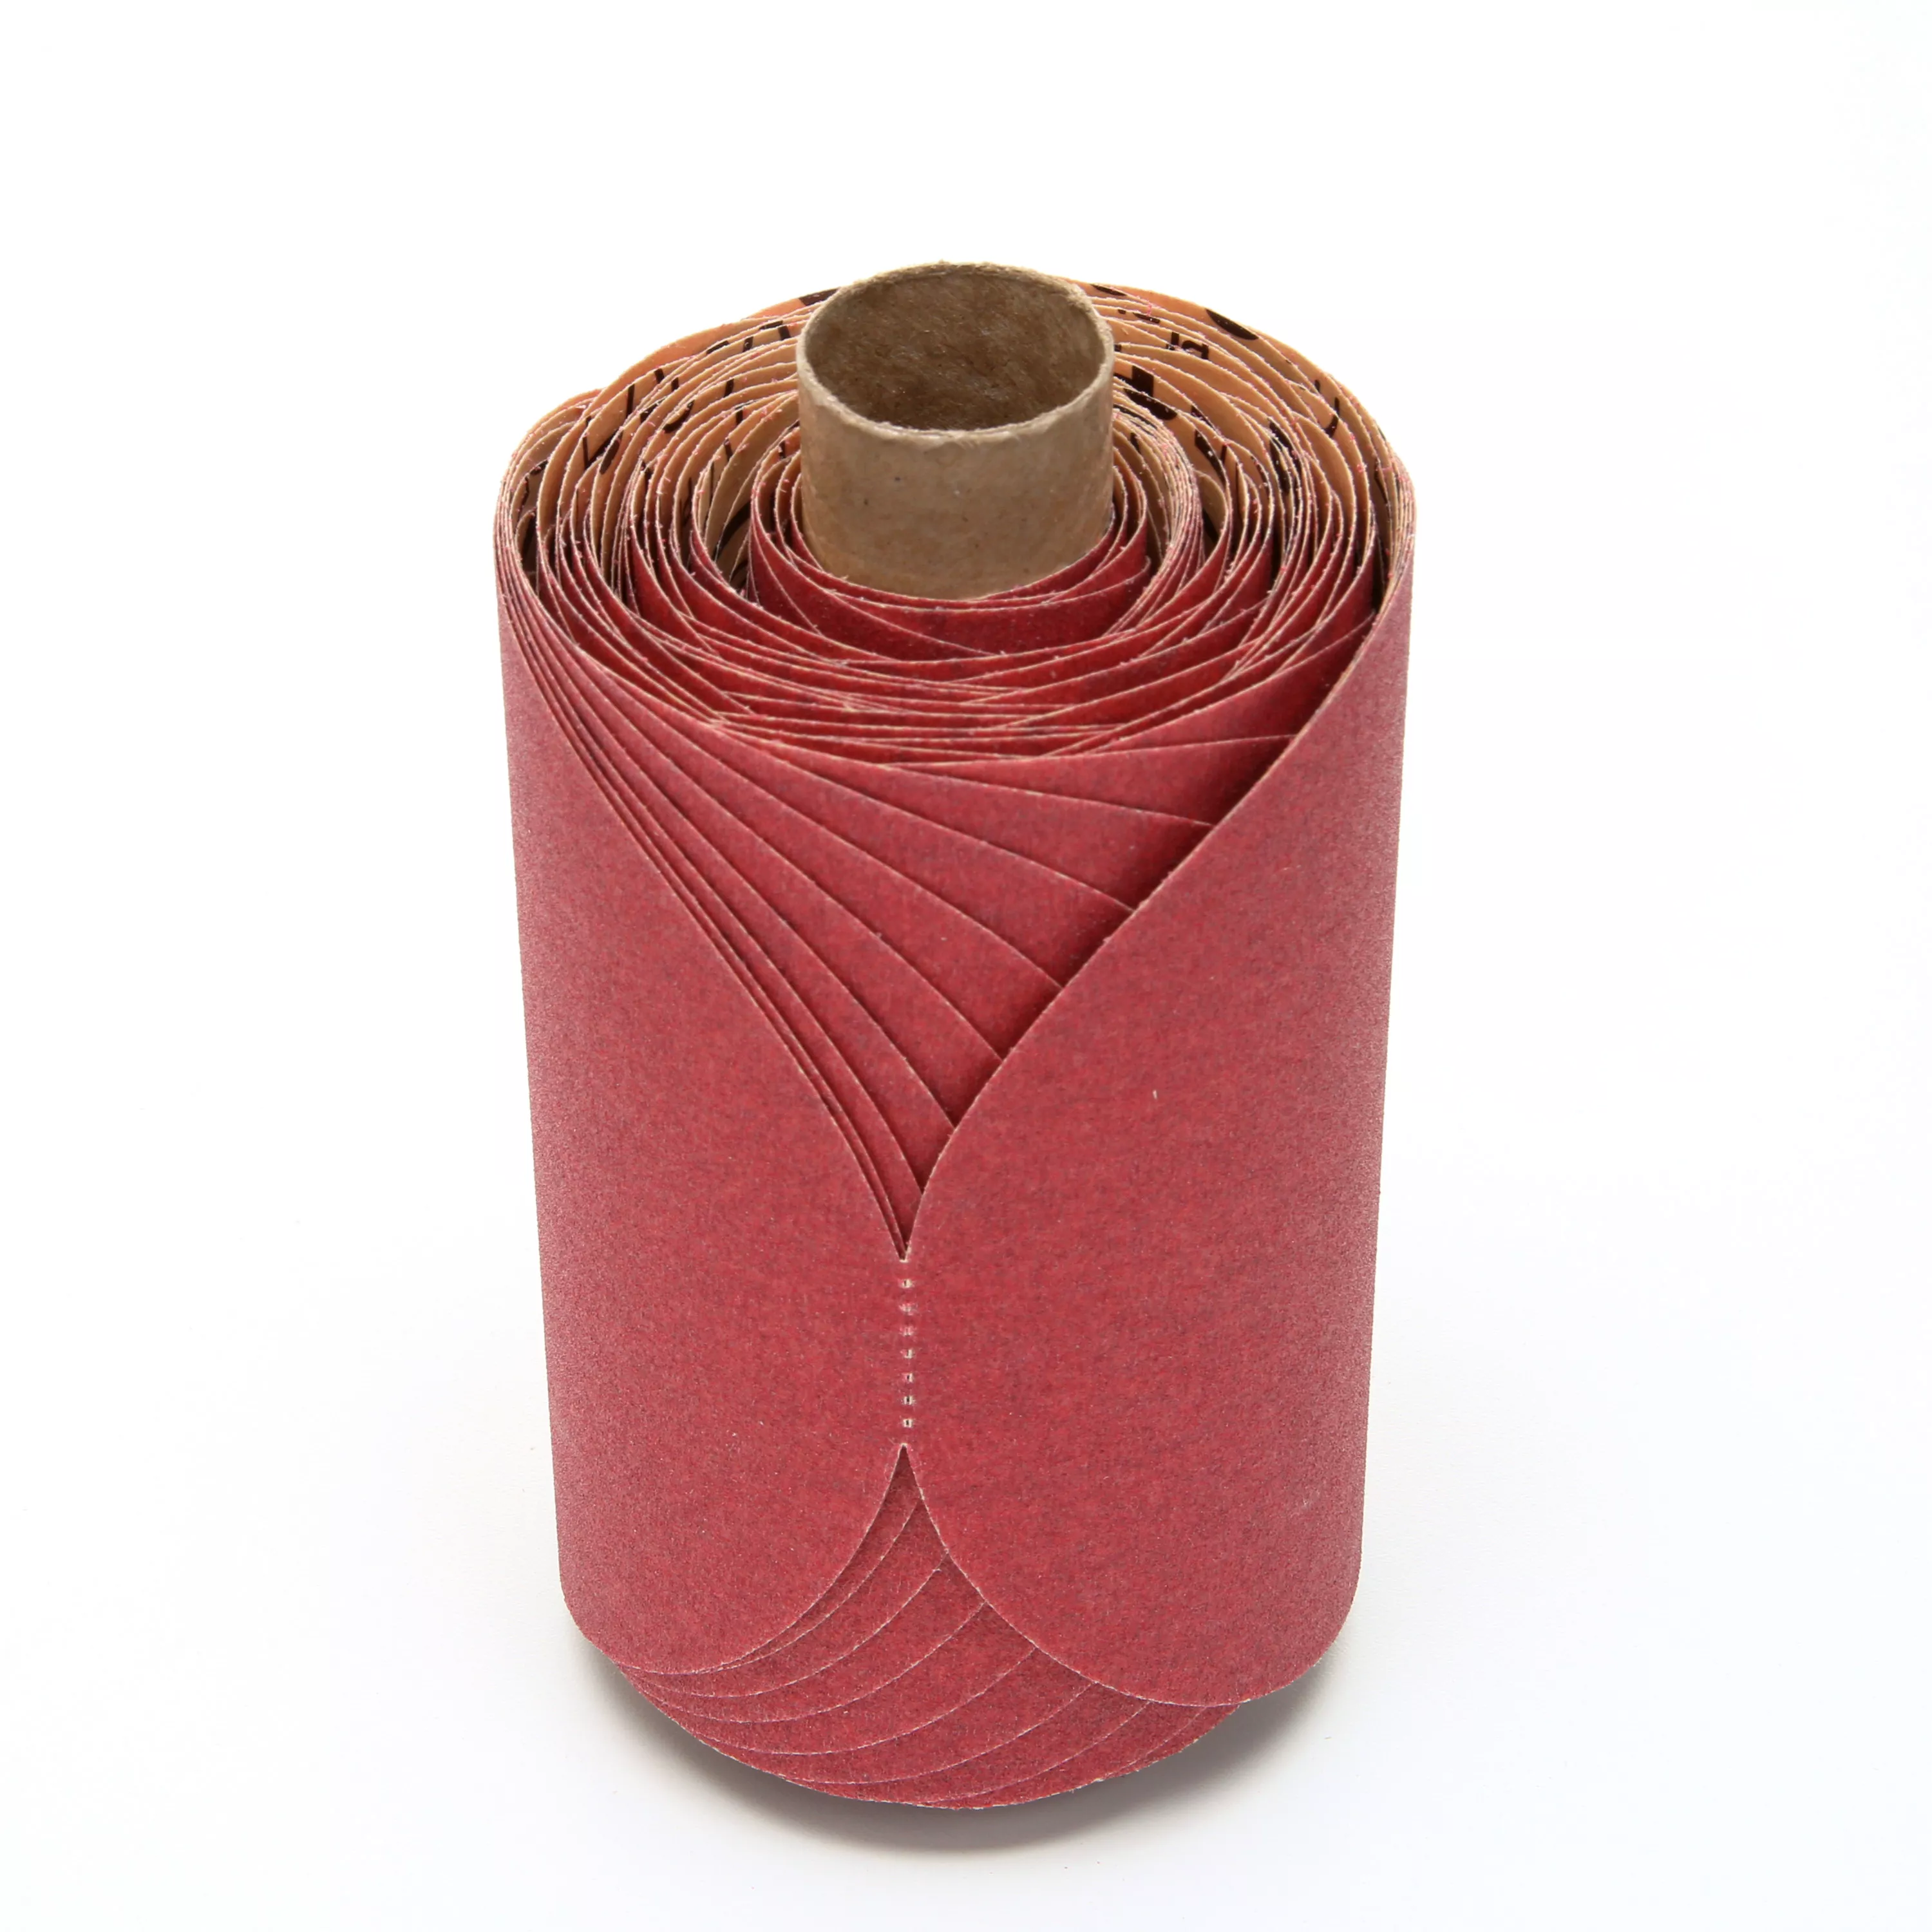 3M™ Red Abrasive PSA Disc, 01607, 5 in, P150, 100 discs per roll, 6
rolls per case